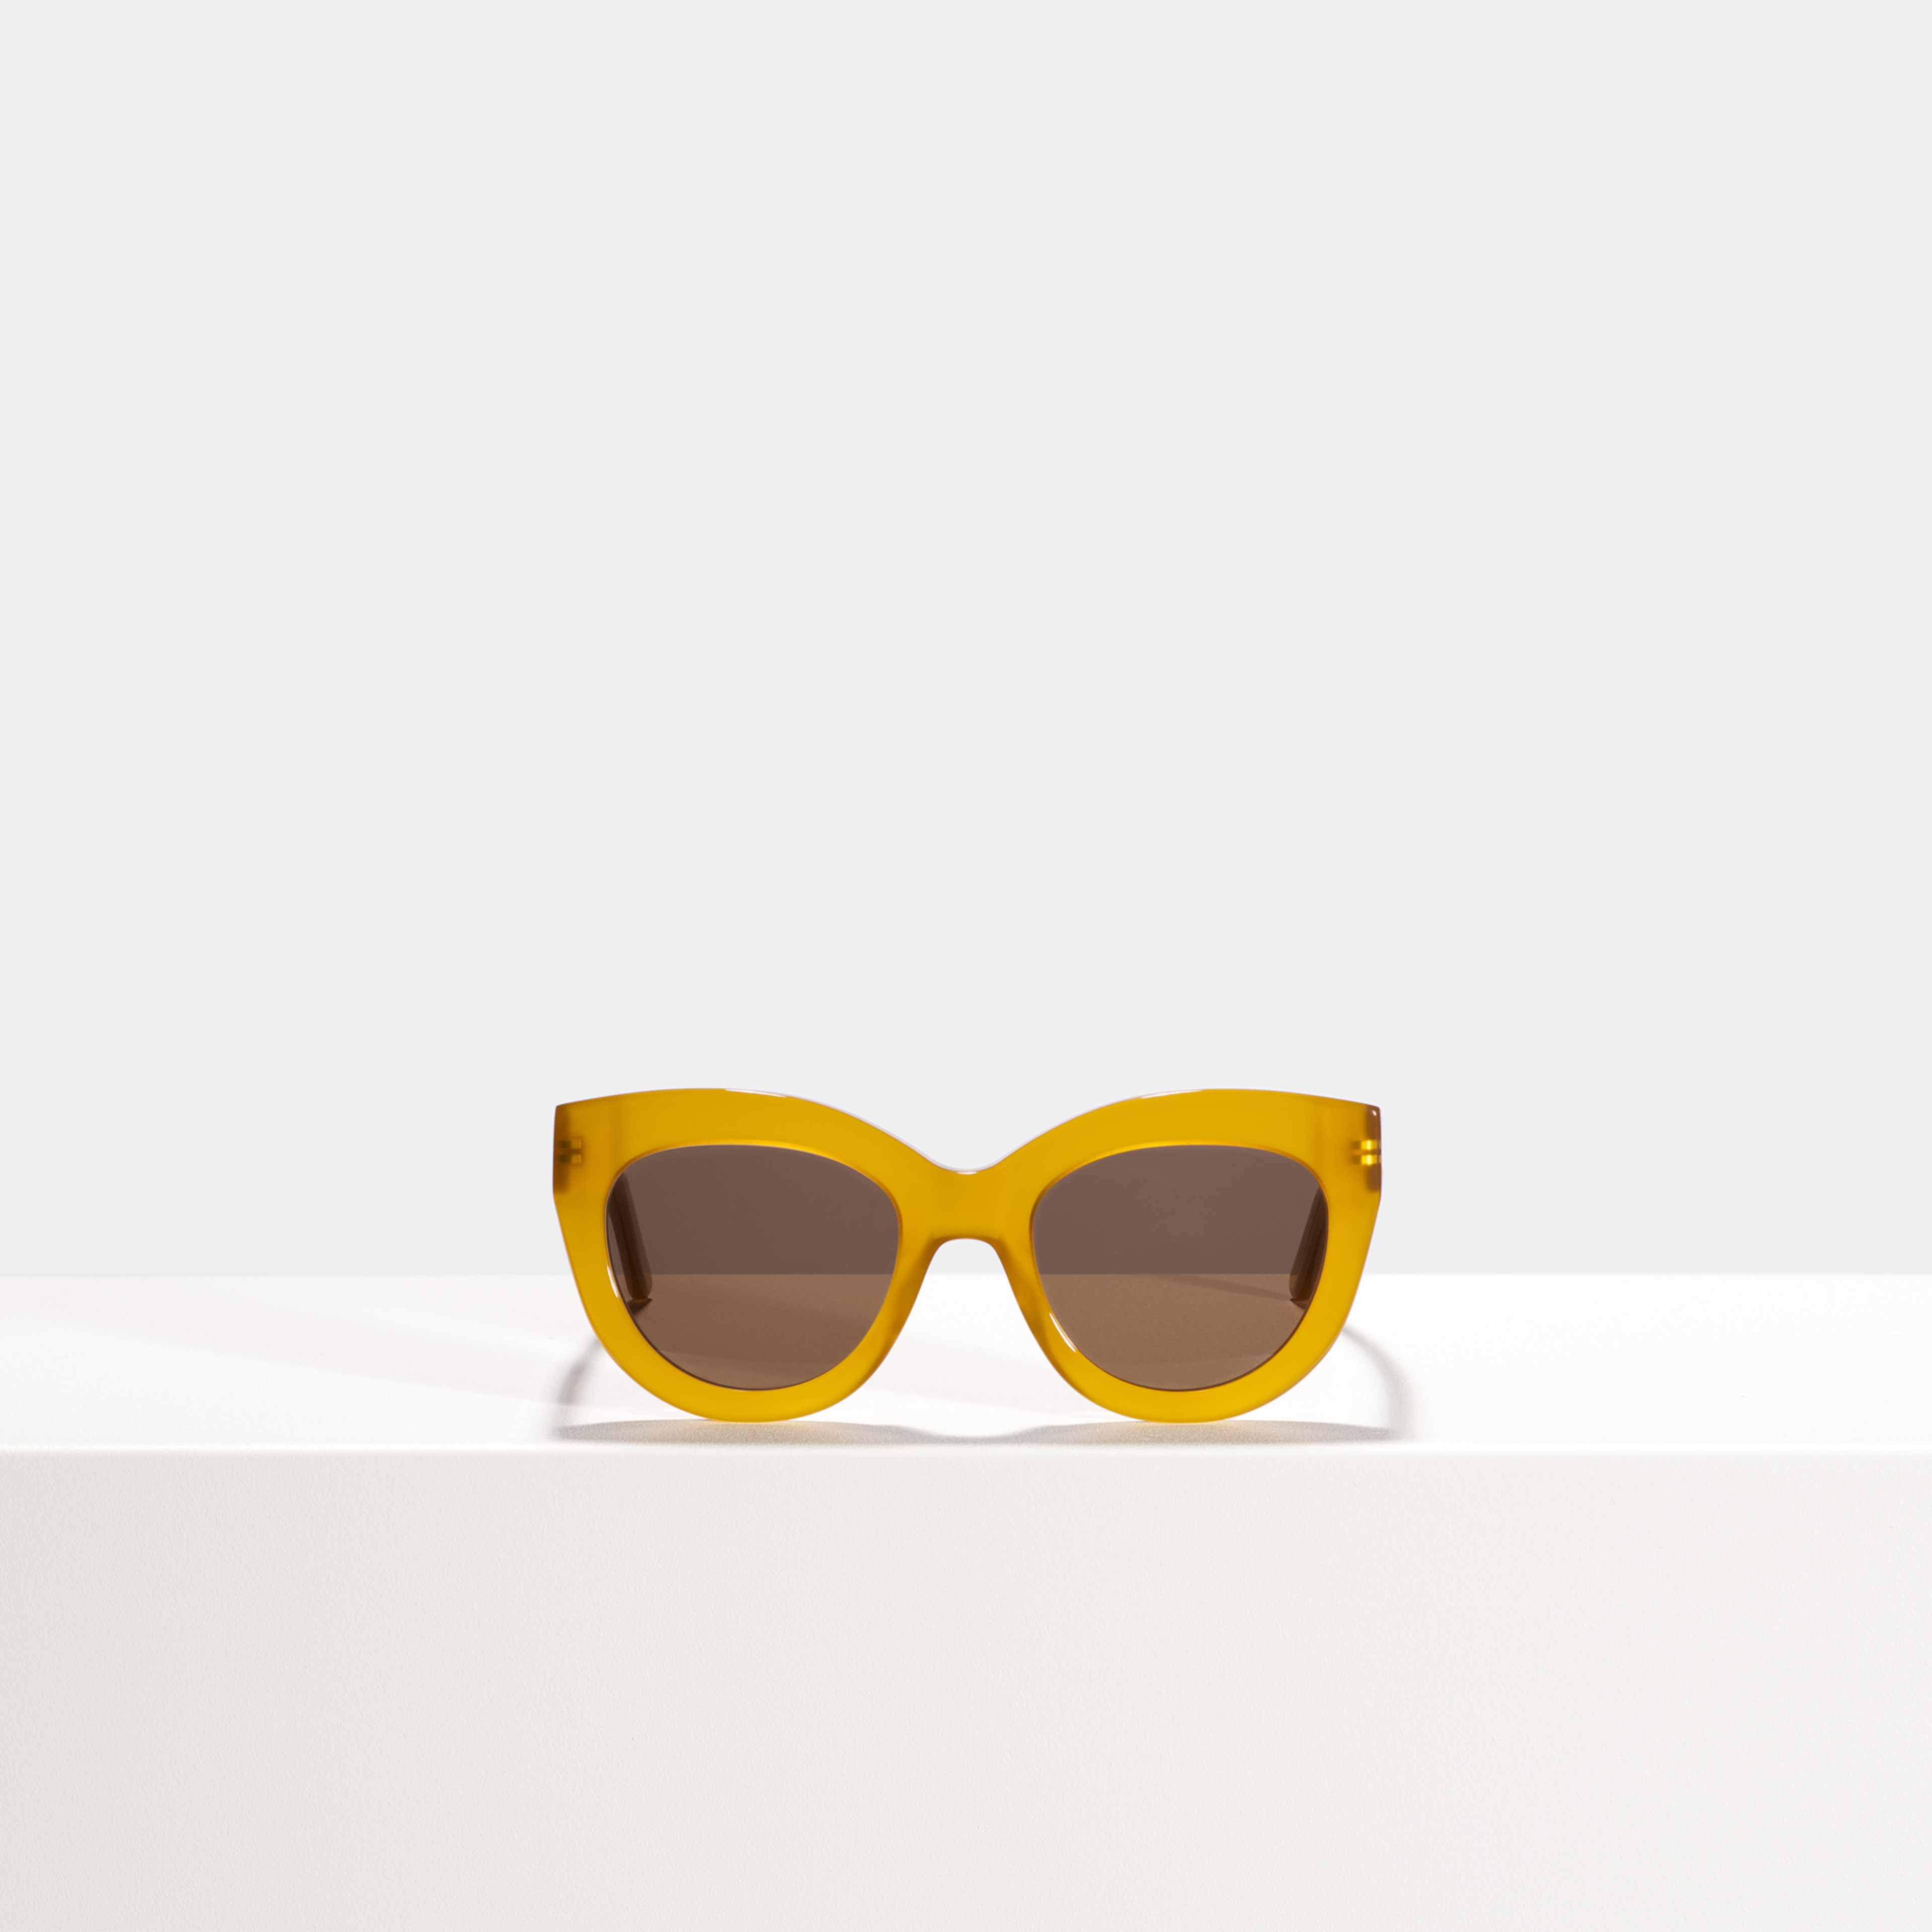 Ace & Tate Sonnenbrillen |  Acetat in Braun, Orange, Gelb